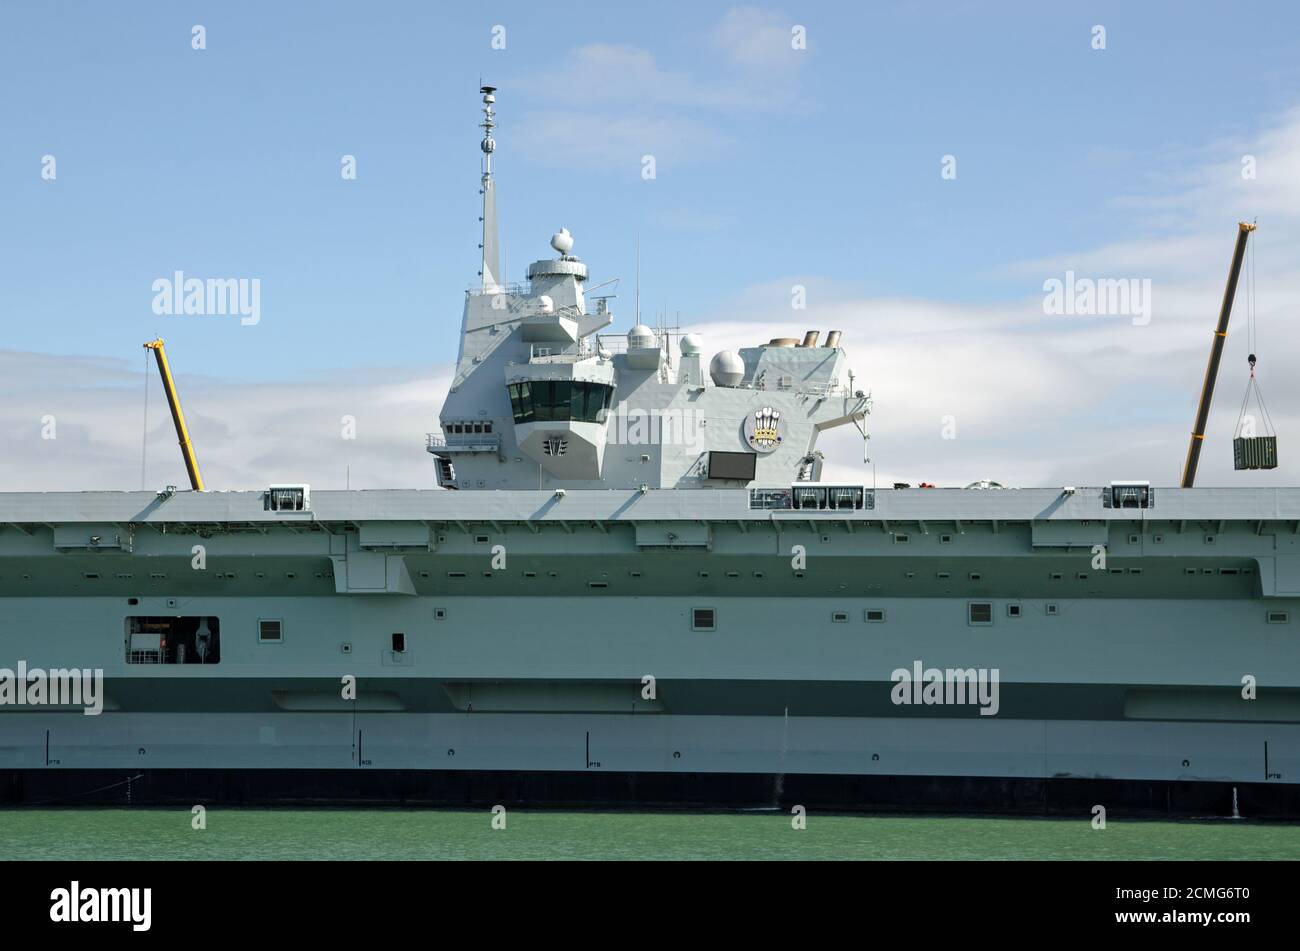 Superestructura y puente del portaaviones de la Royal Navy HMS Prince of Wales amarrado en Portsmouth Harbour, Hampshire. Foto de stock